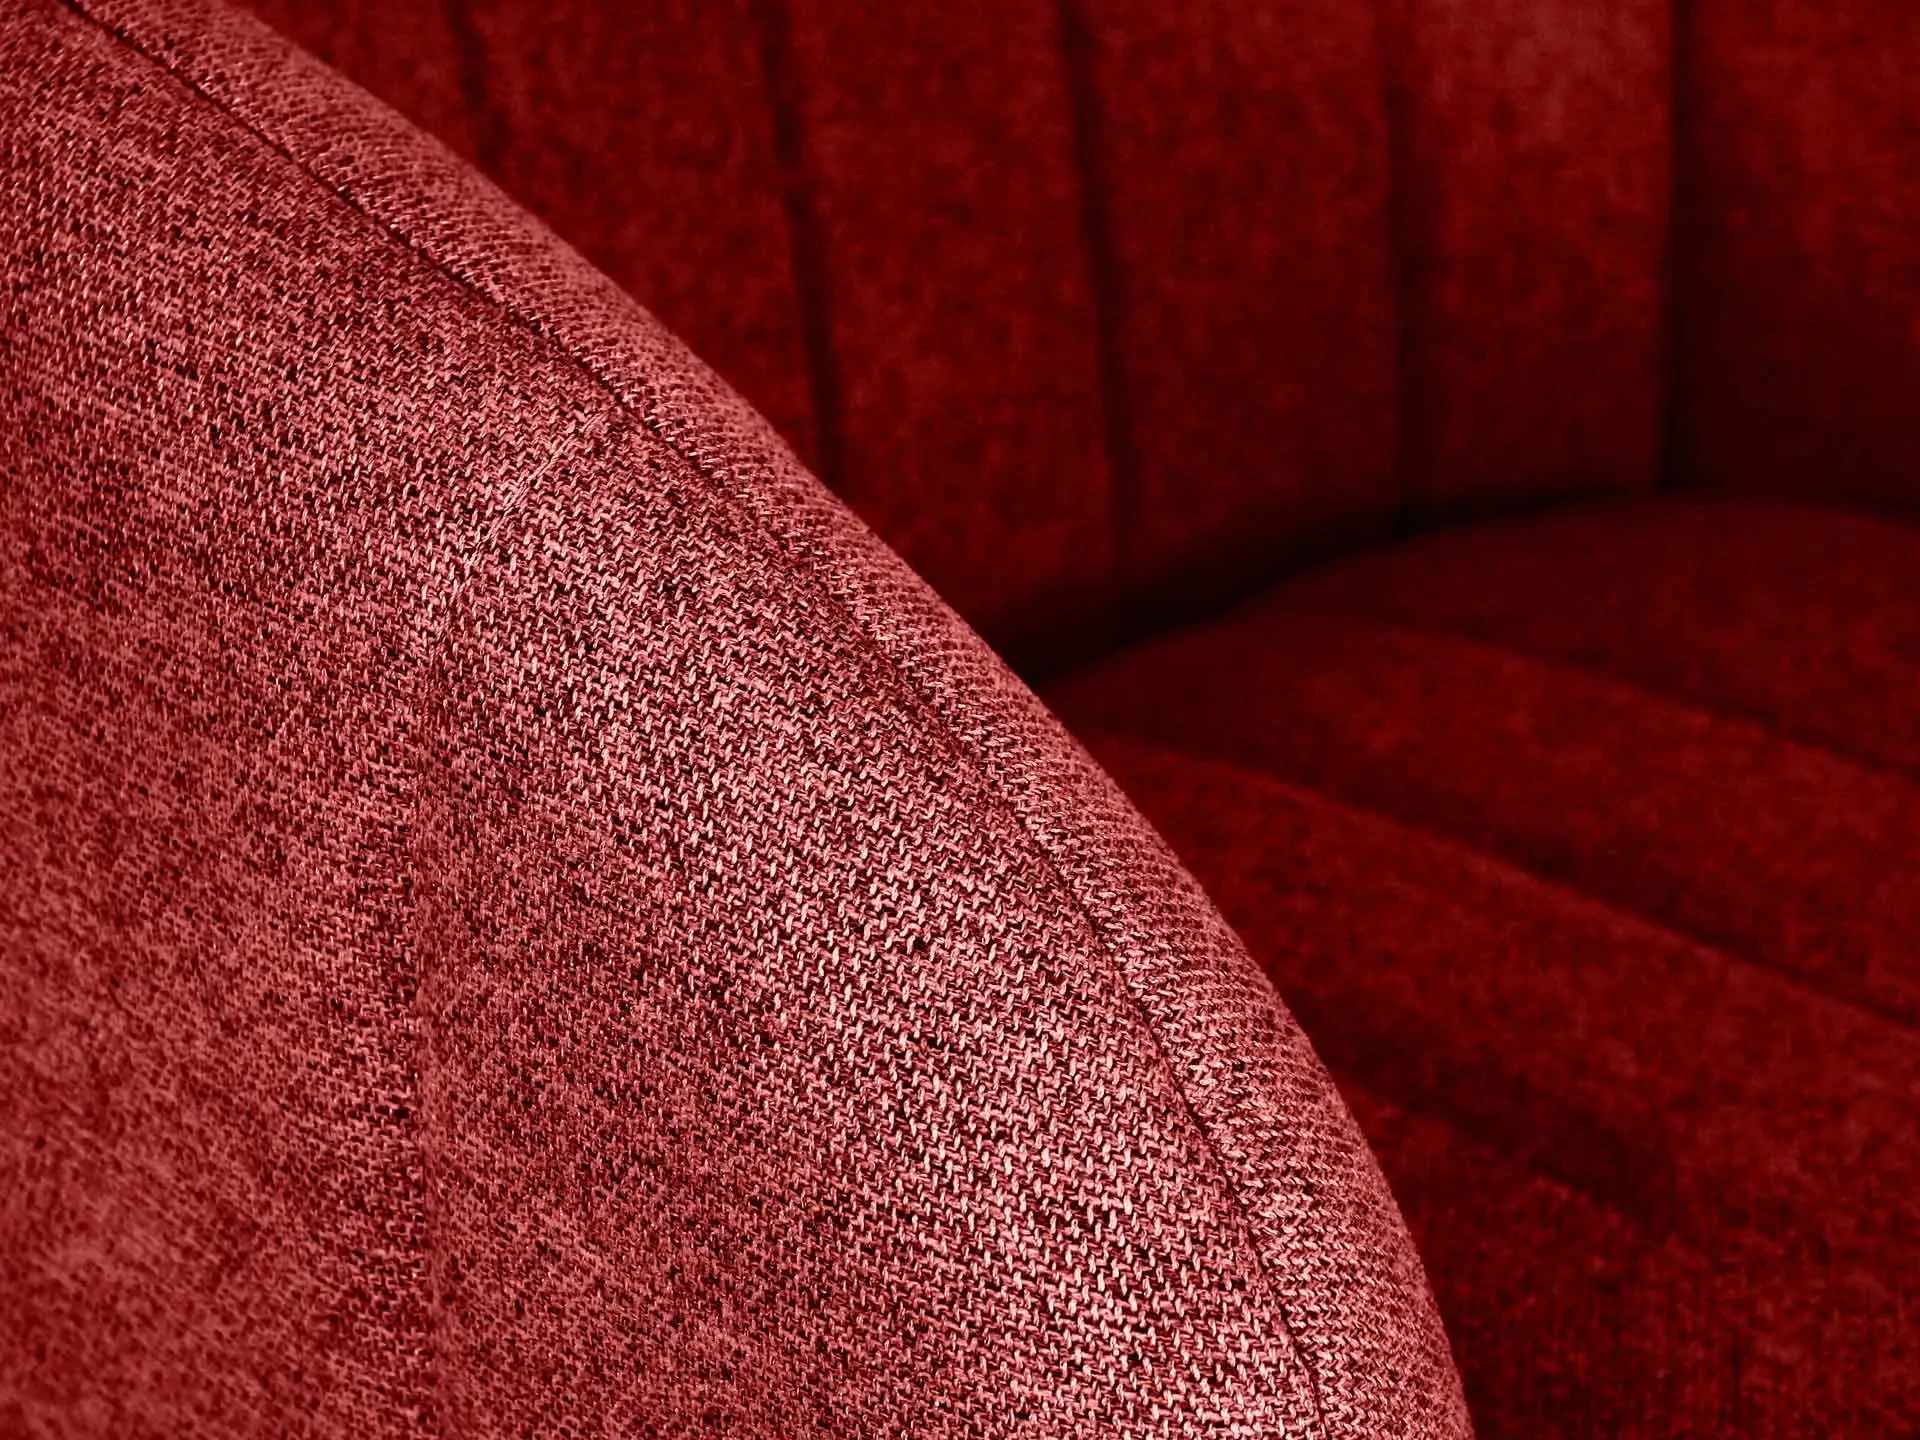 Кресло Lecco красный 745076